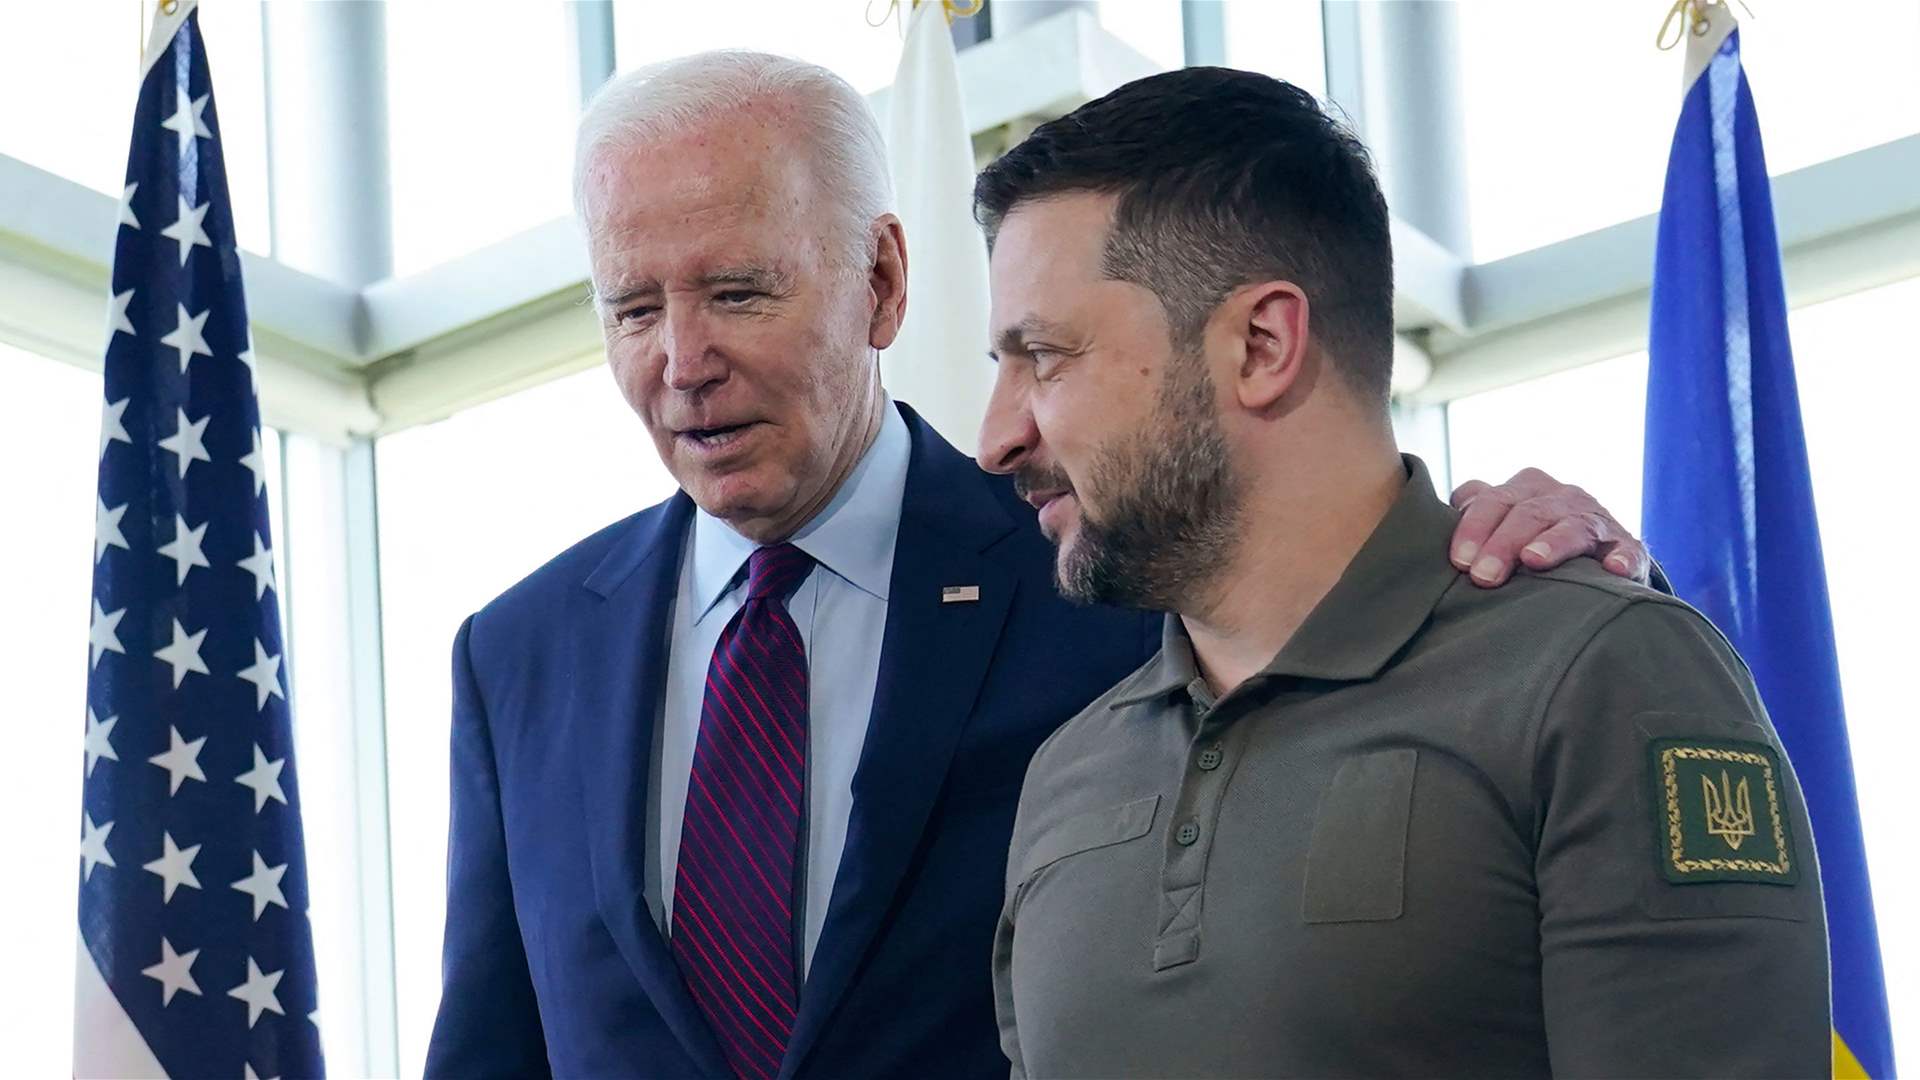 Biden to meet Zelensky at NATO summit on Thursday: White House